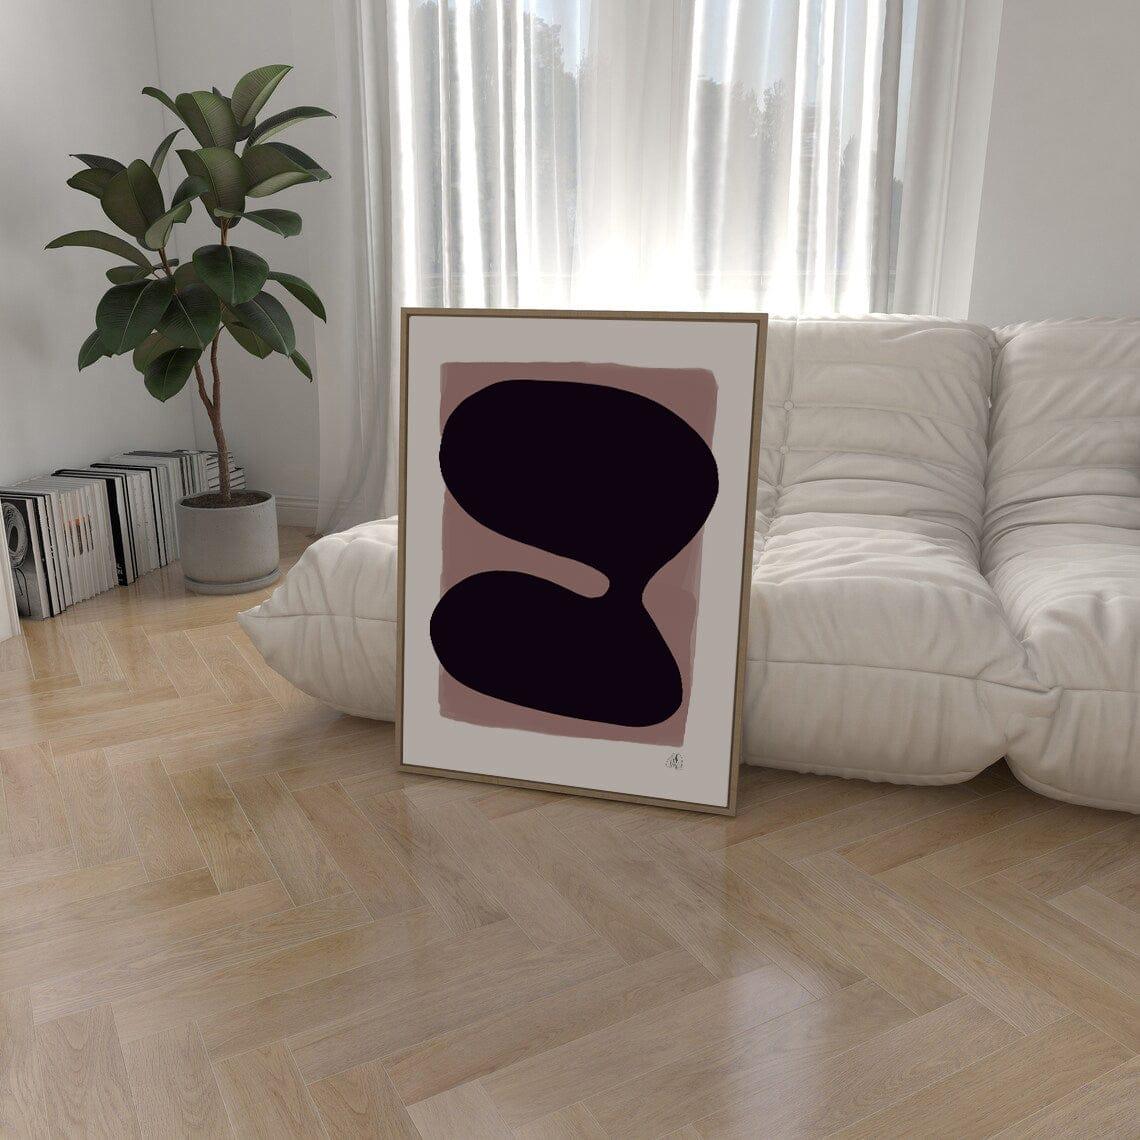 Purple blob framed matte paper poster | HiPosterShop